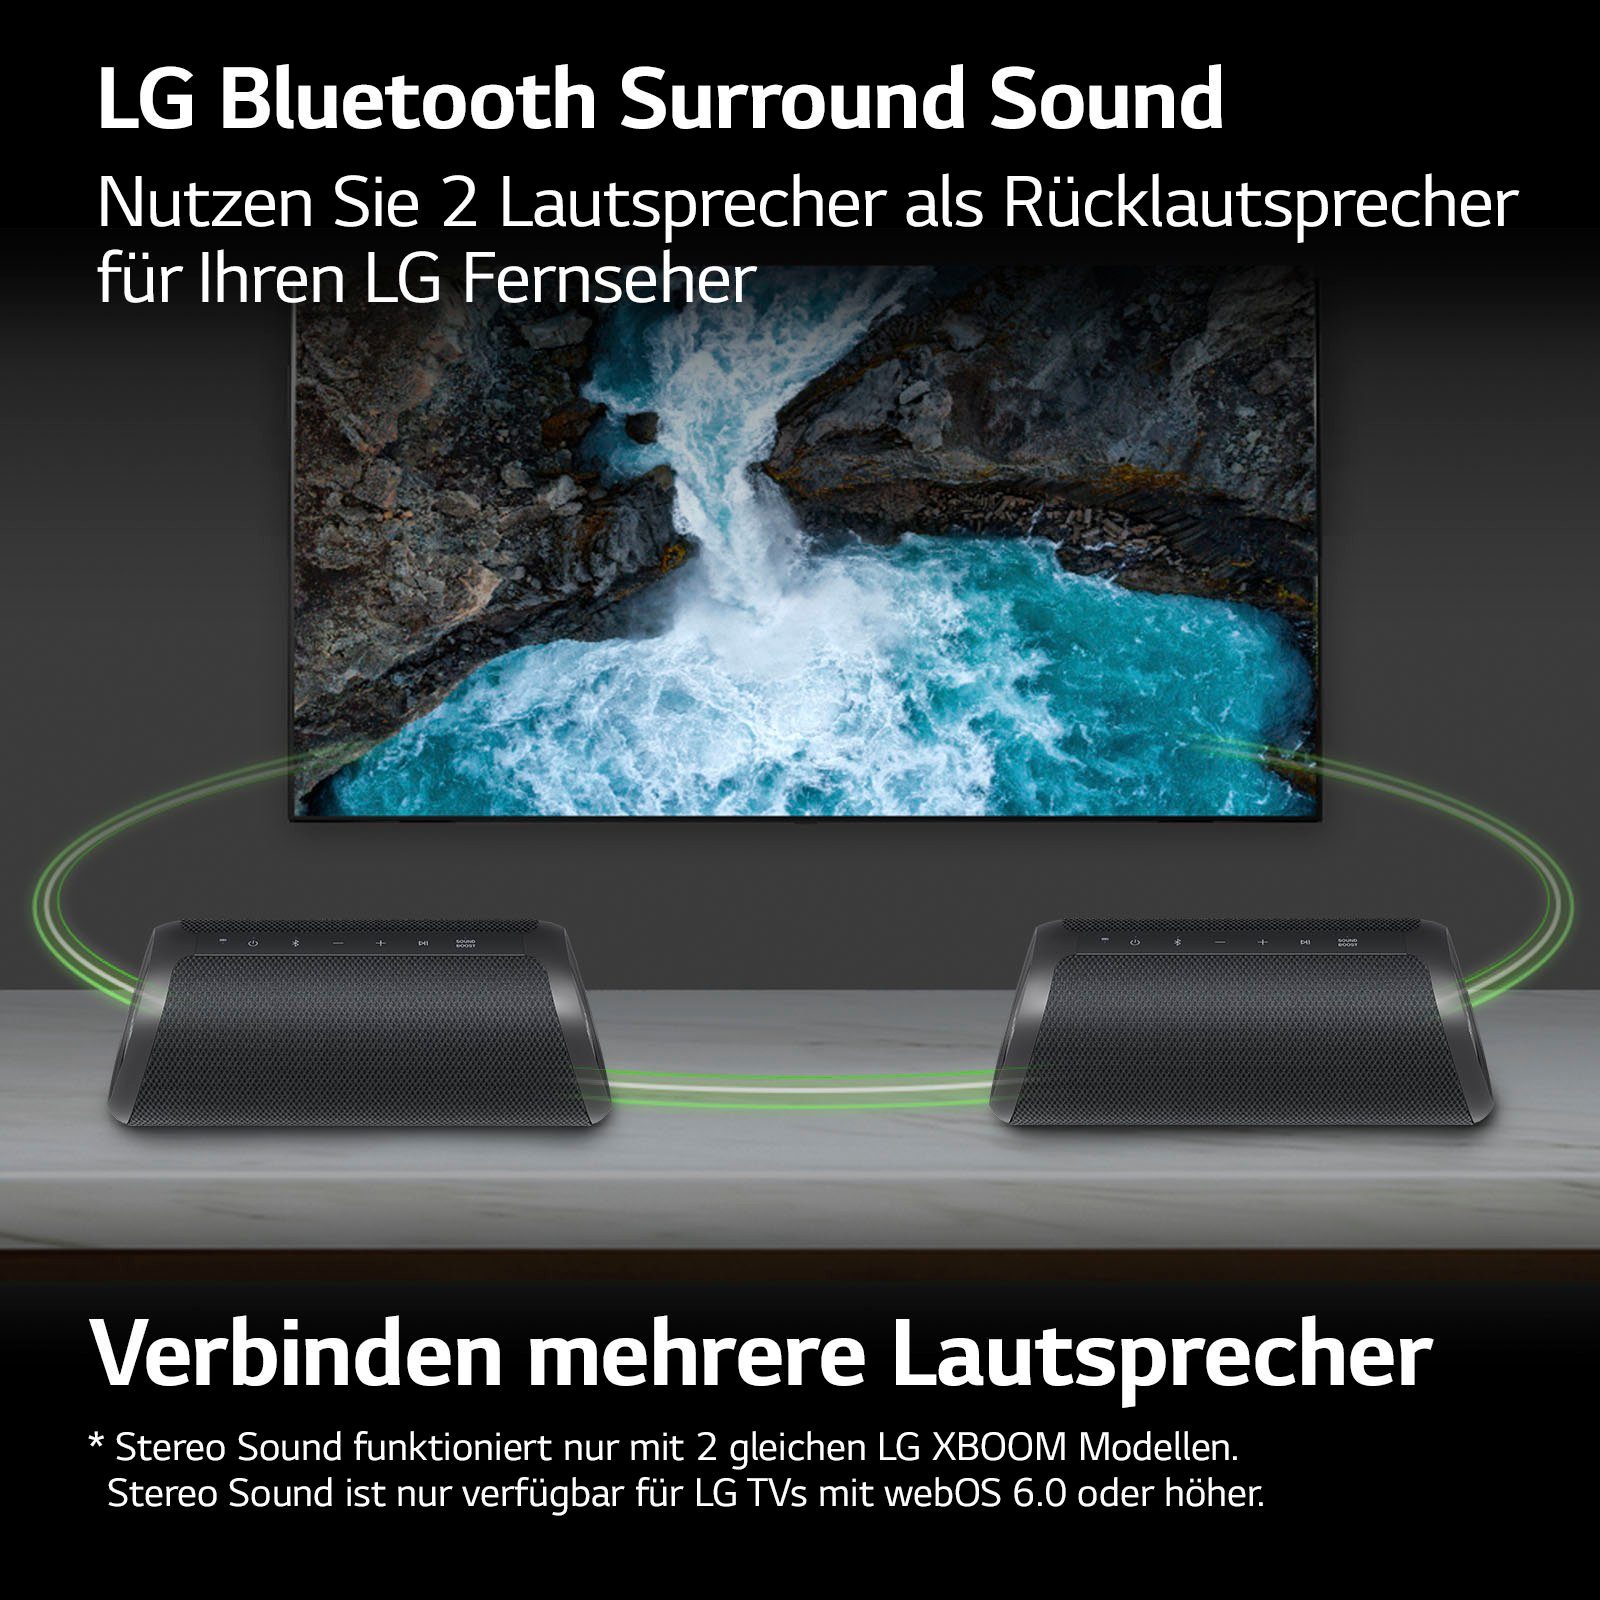 XBOOM LG Lautsprecher W) 1.0 40 schwarz (Bluetooth, DXG7 Go